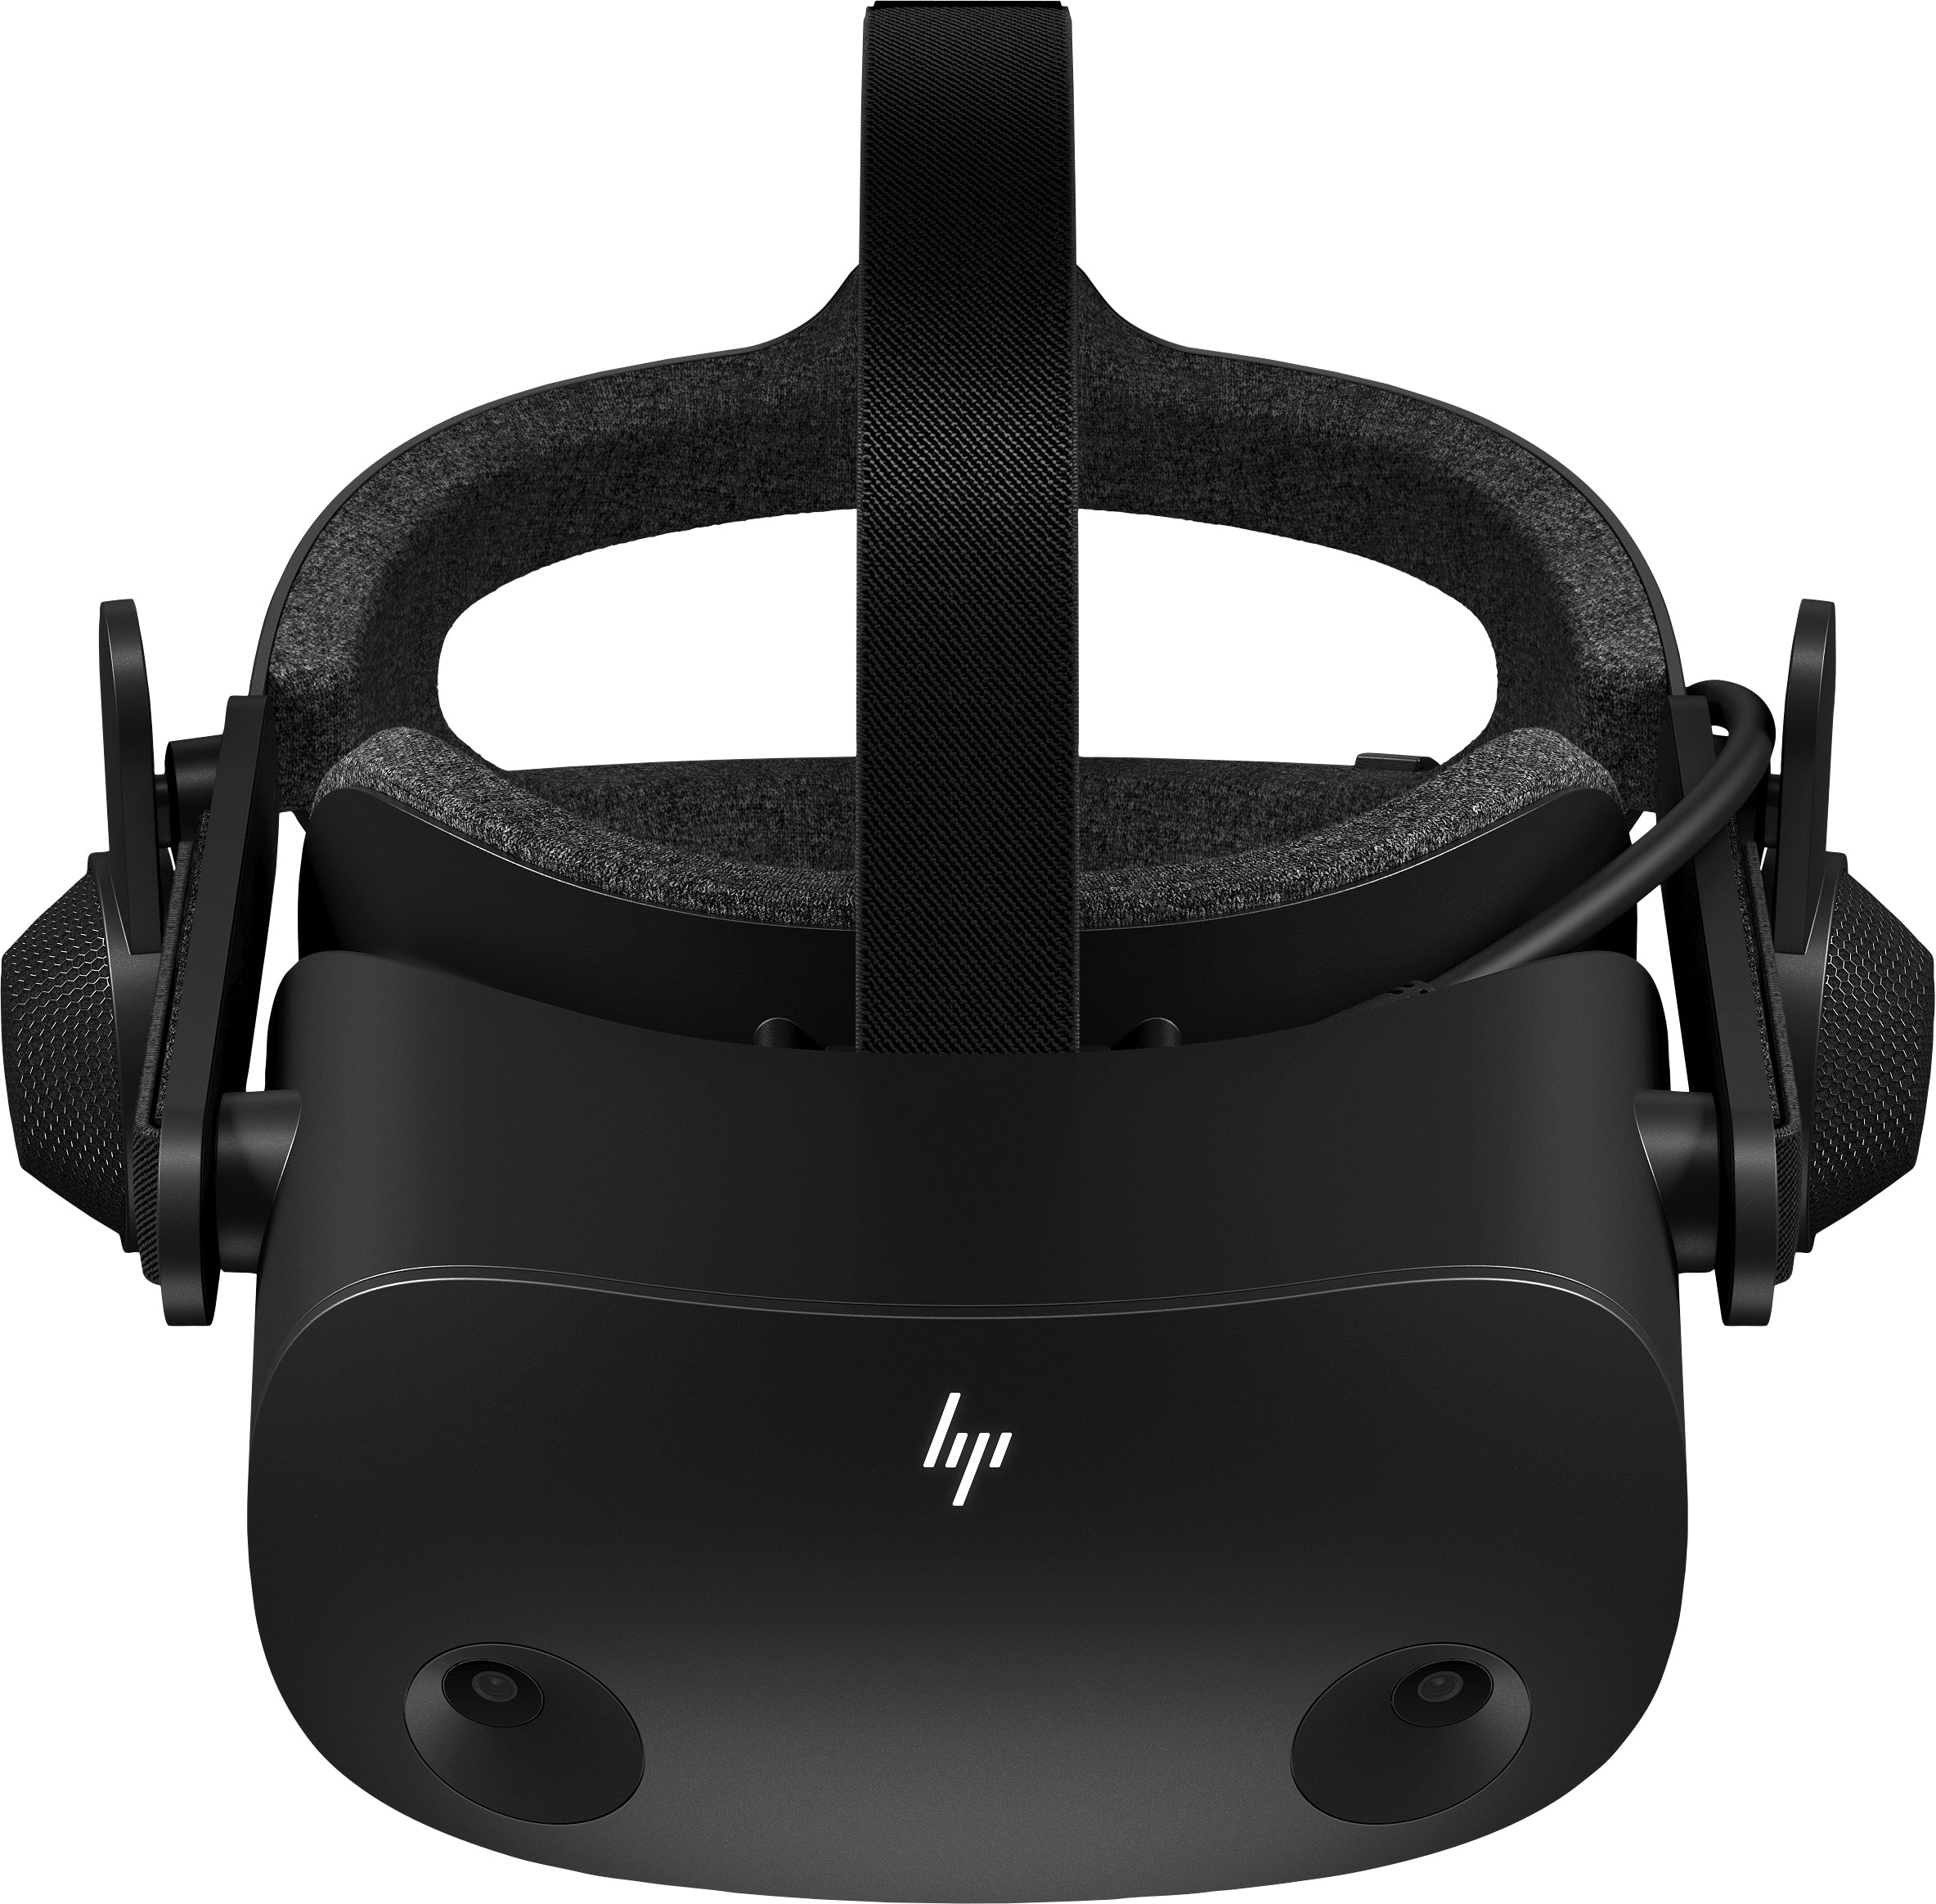 VRGaming - Bredt udvalg af produkter til VR